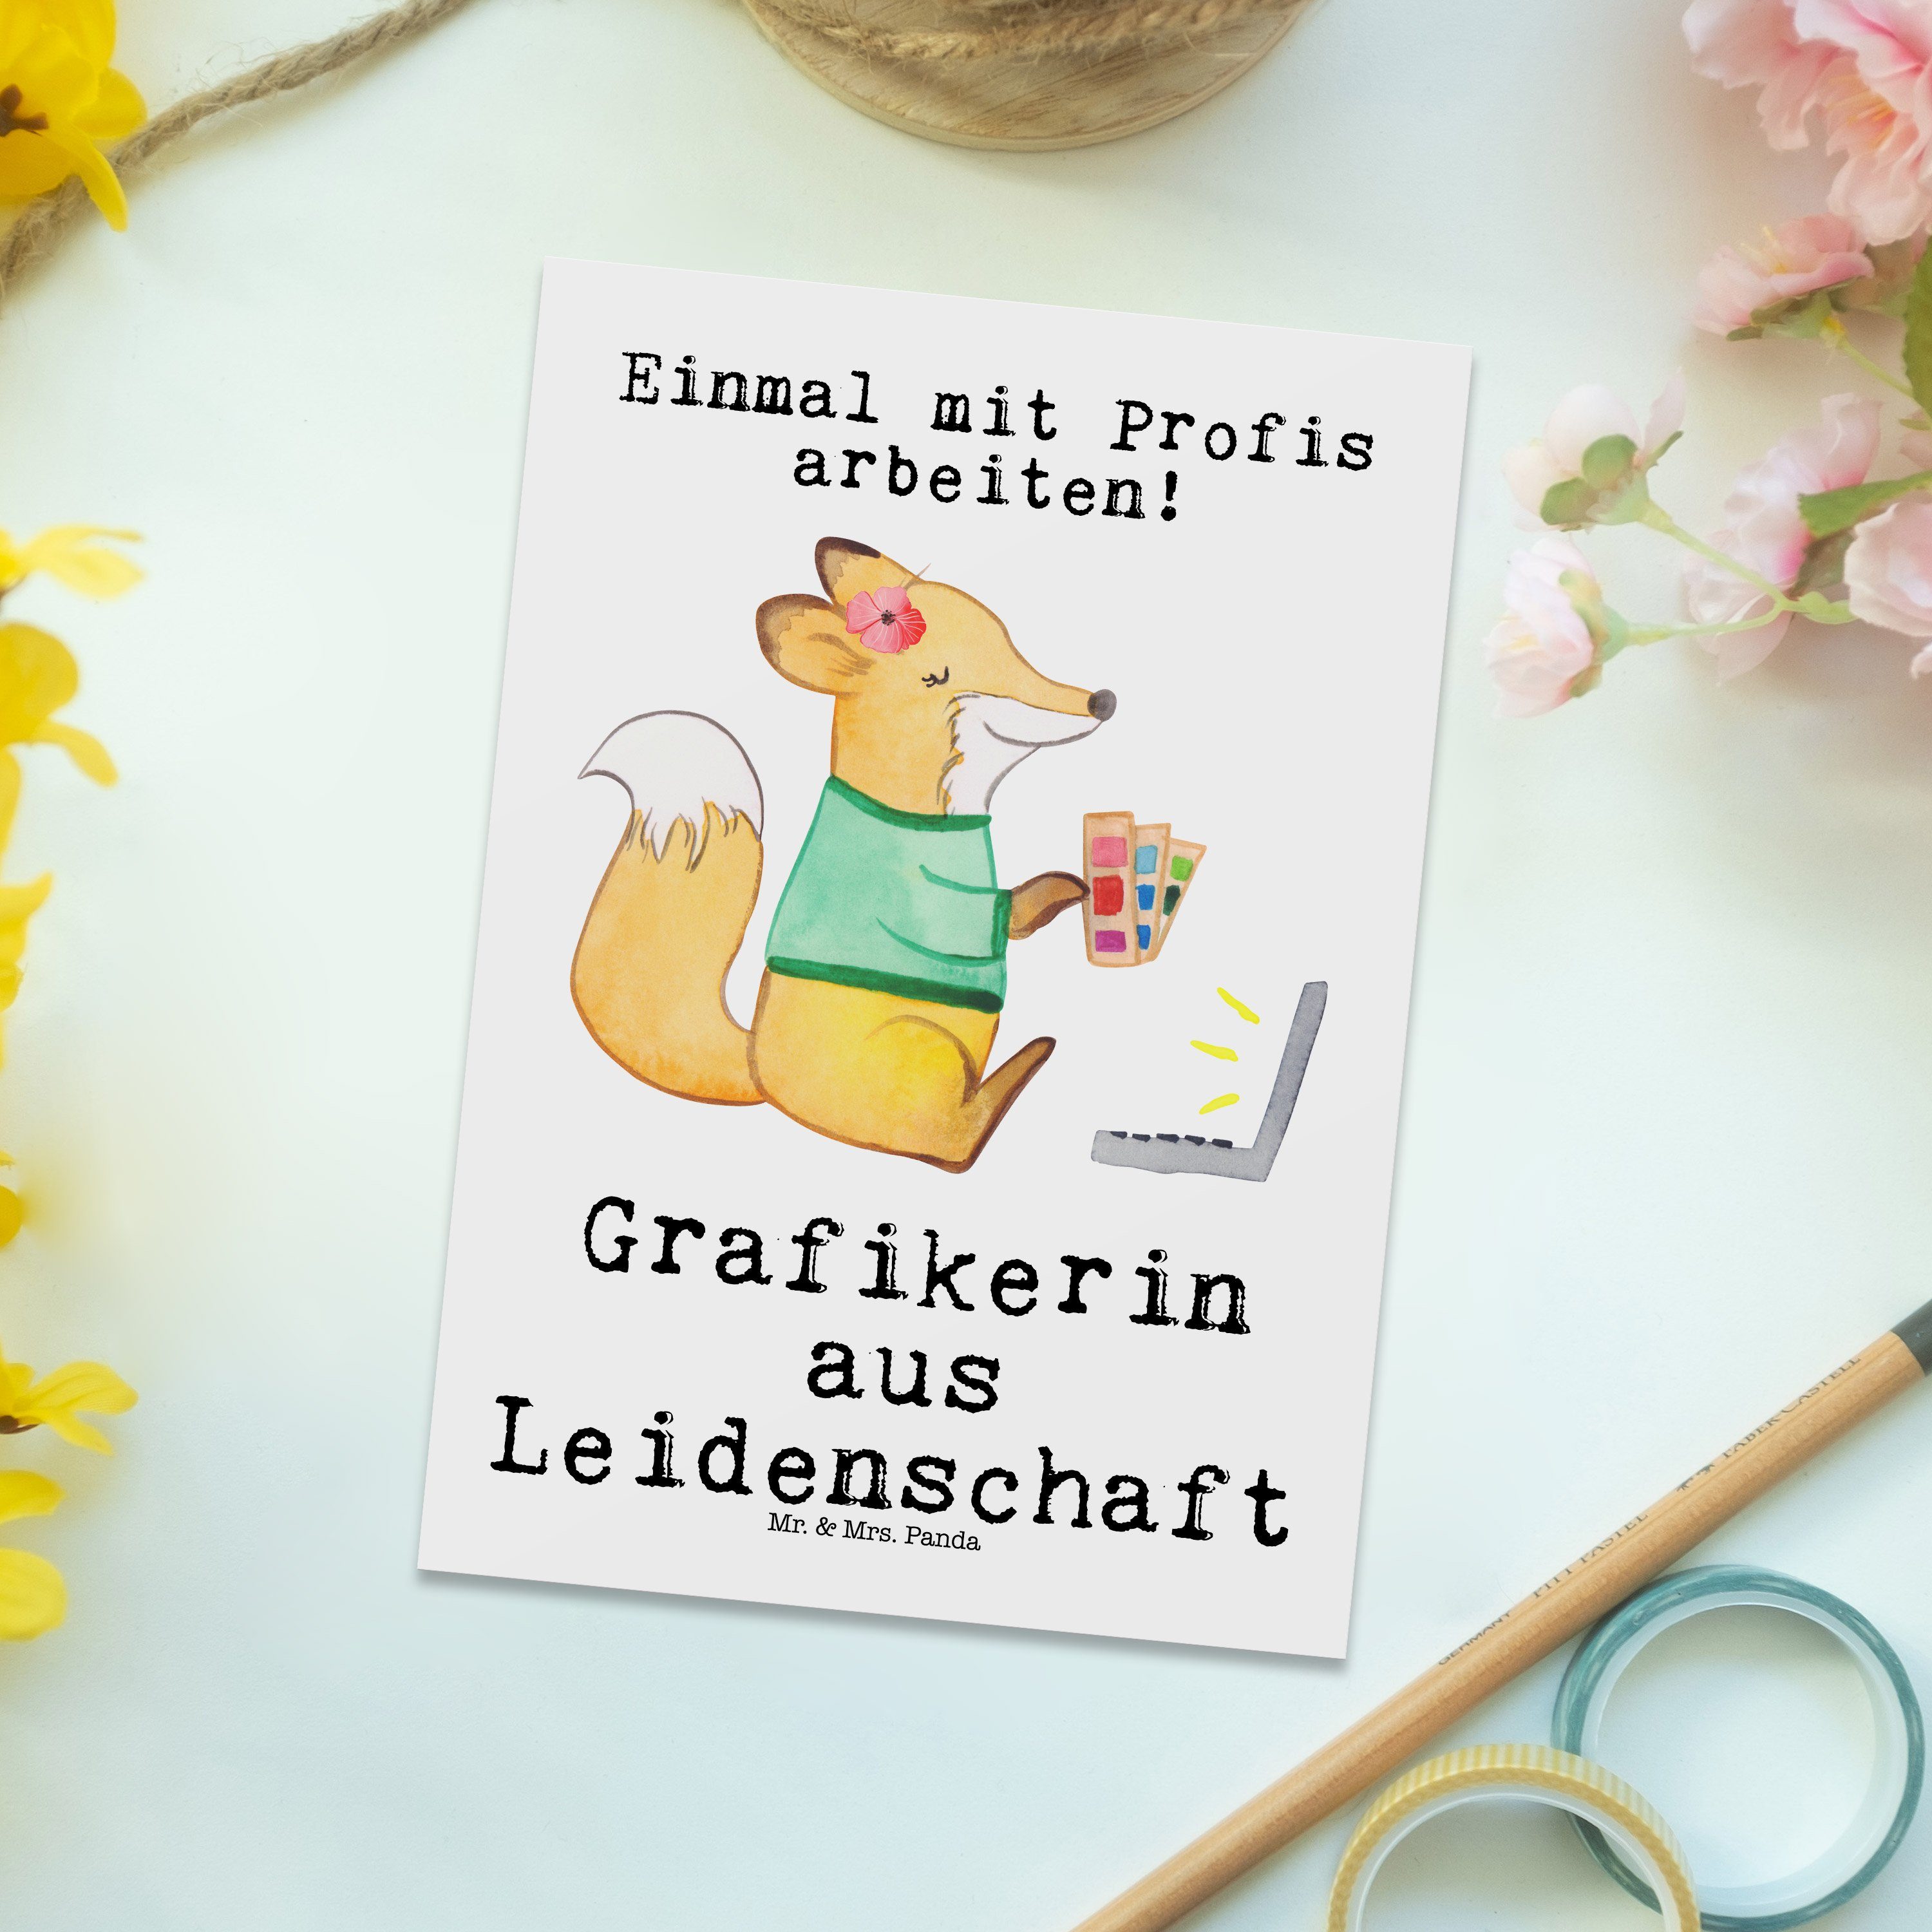 Mrs. aus & Postkarte Panda Leidenschaft - Mediengesta Grußkarte, Grafikerin Weiß - Geschenk, Mr.